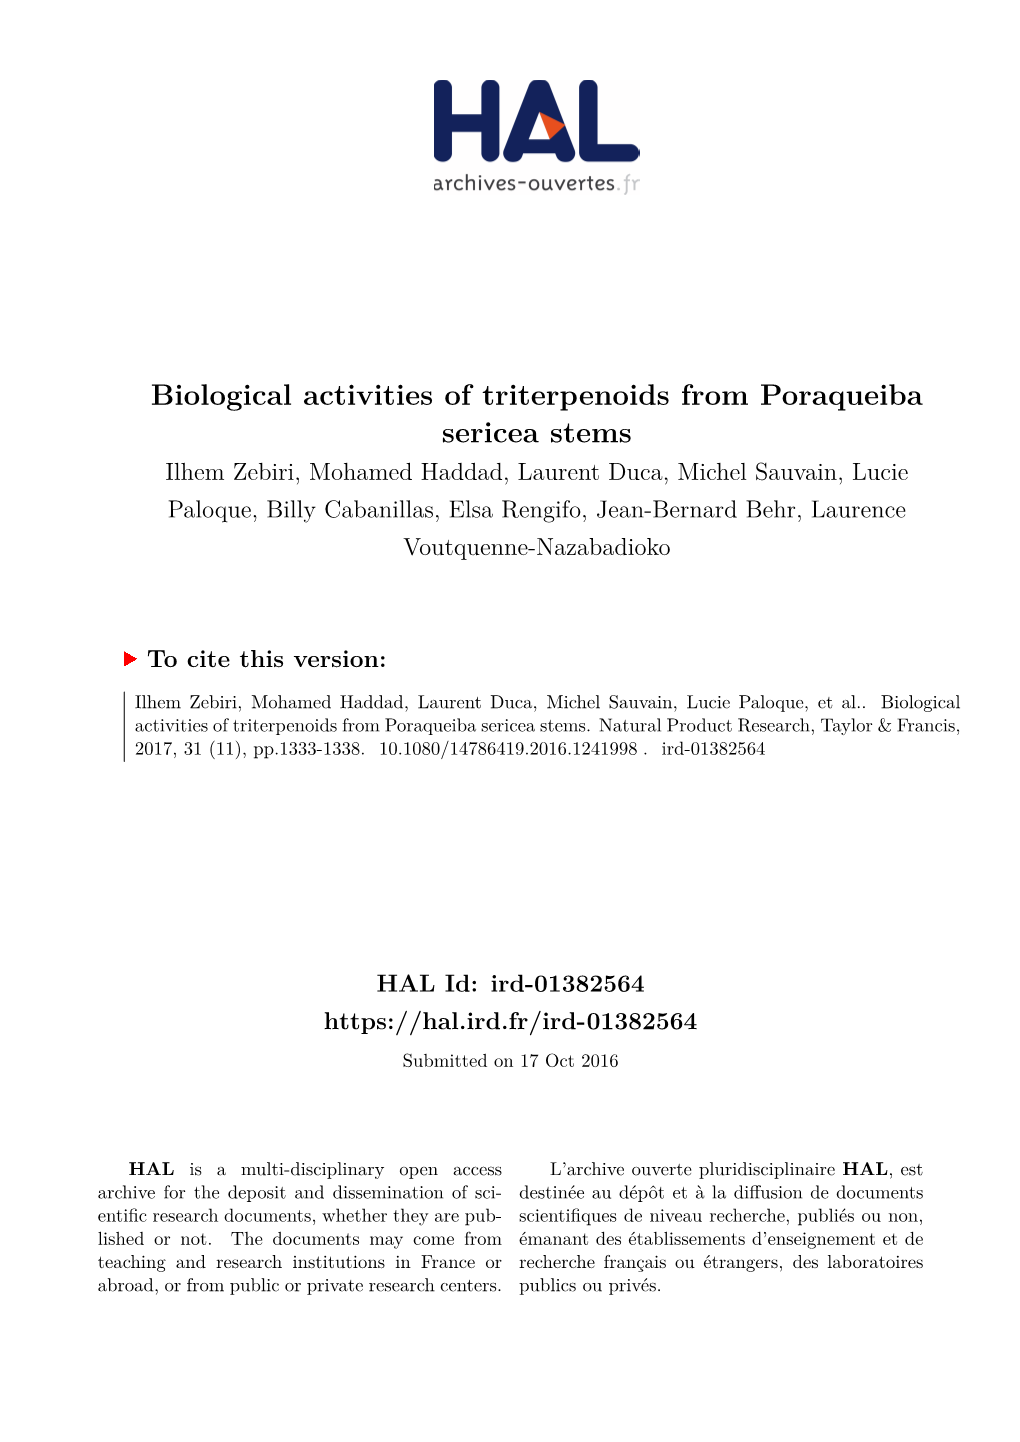 Biological Activities of Triterpenoids from Poraqueiba Sericea